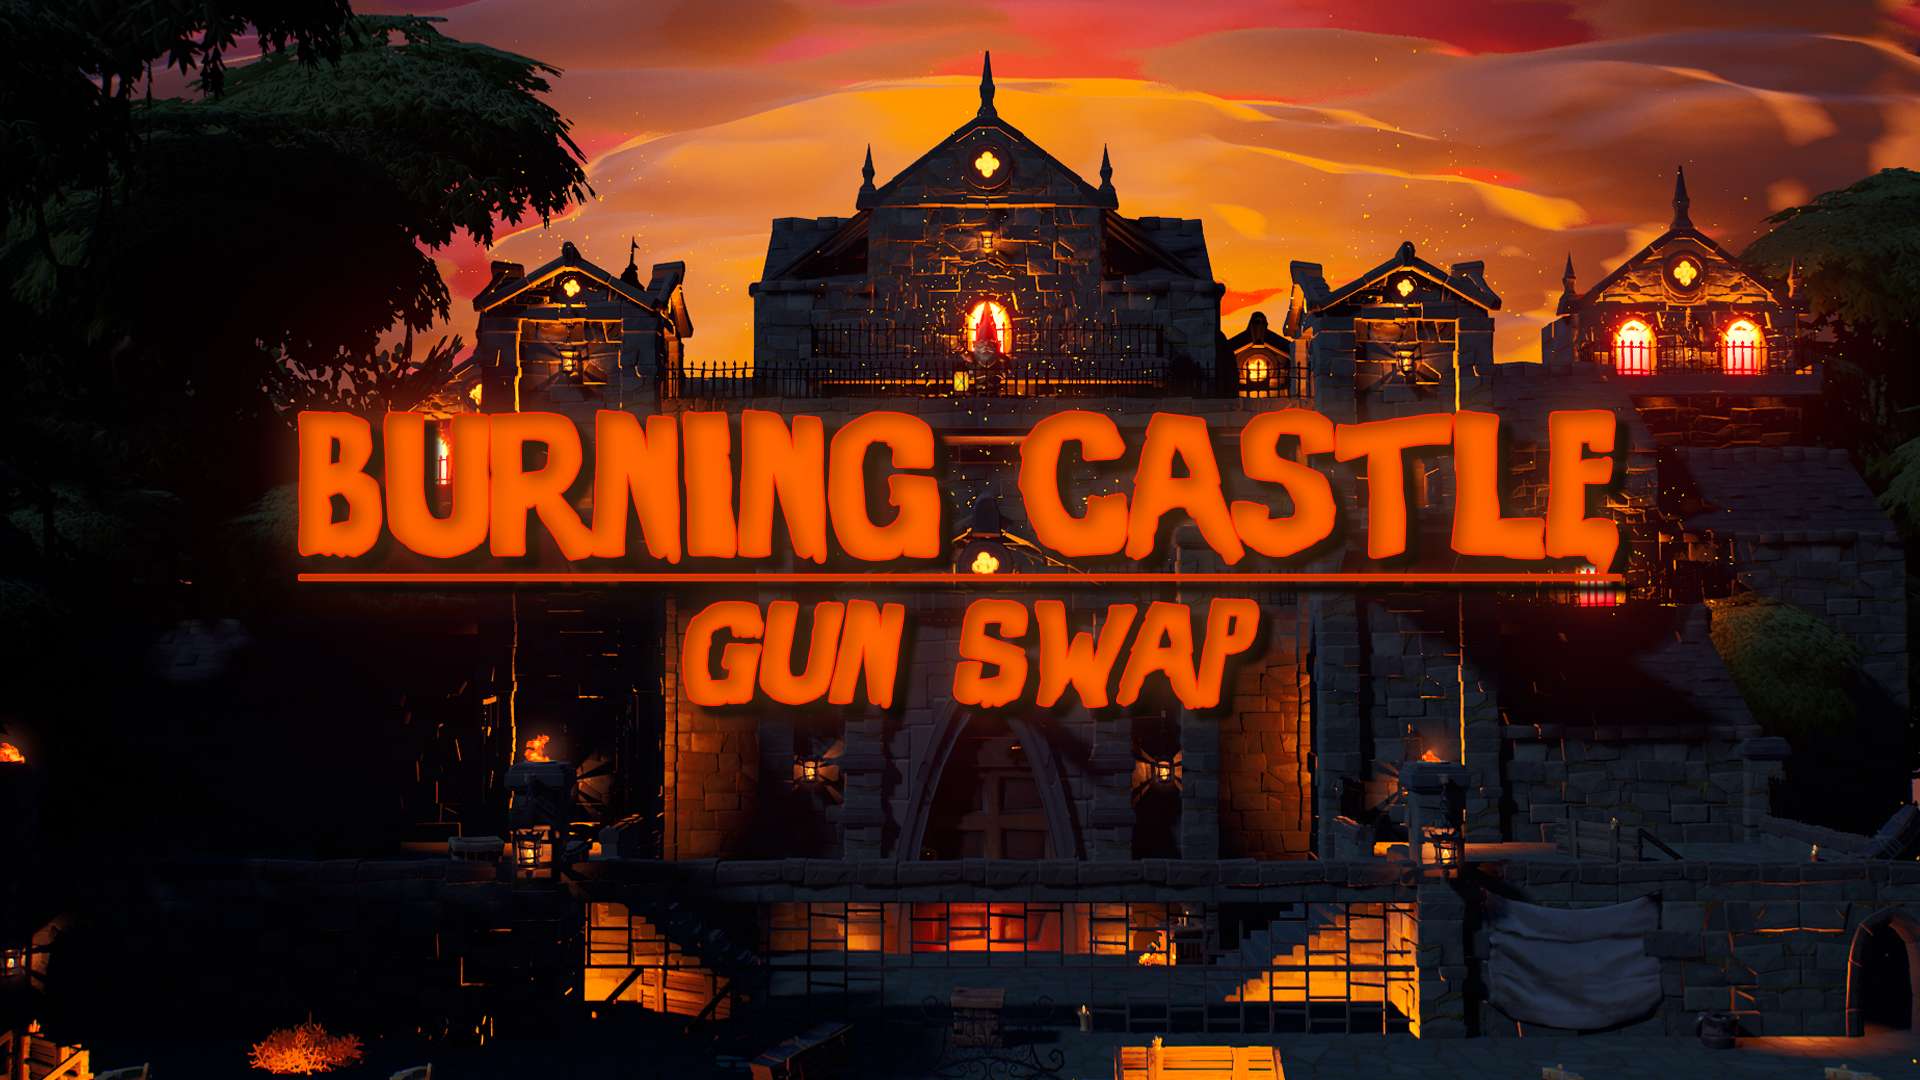 BURNING CASTLE: GUN SWAP